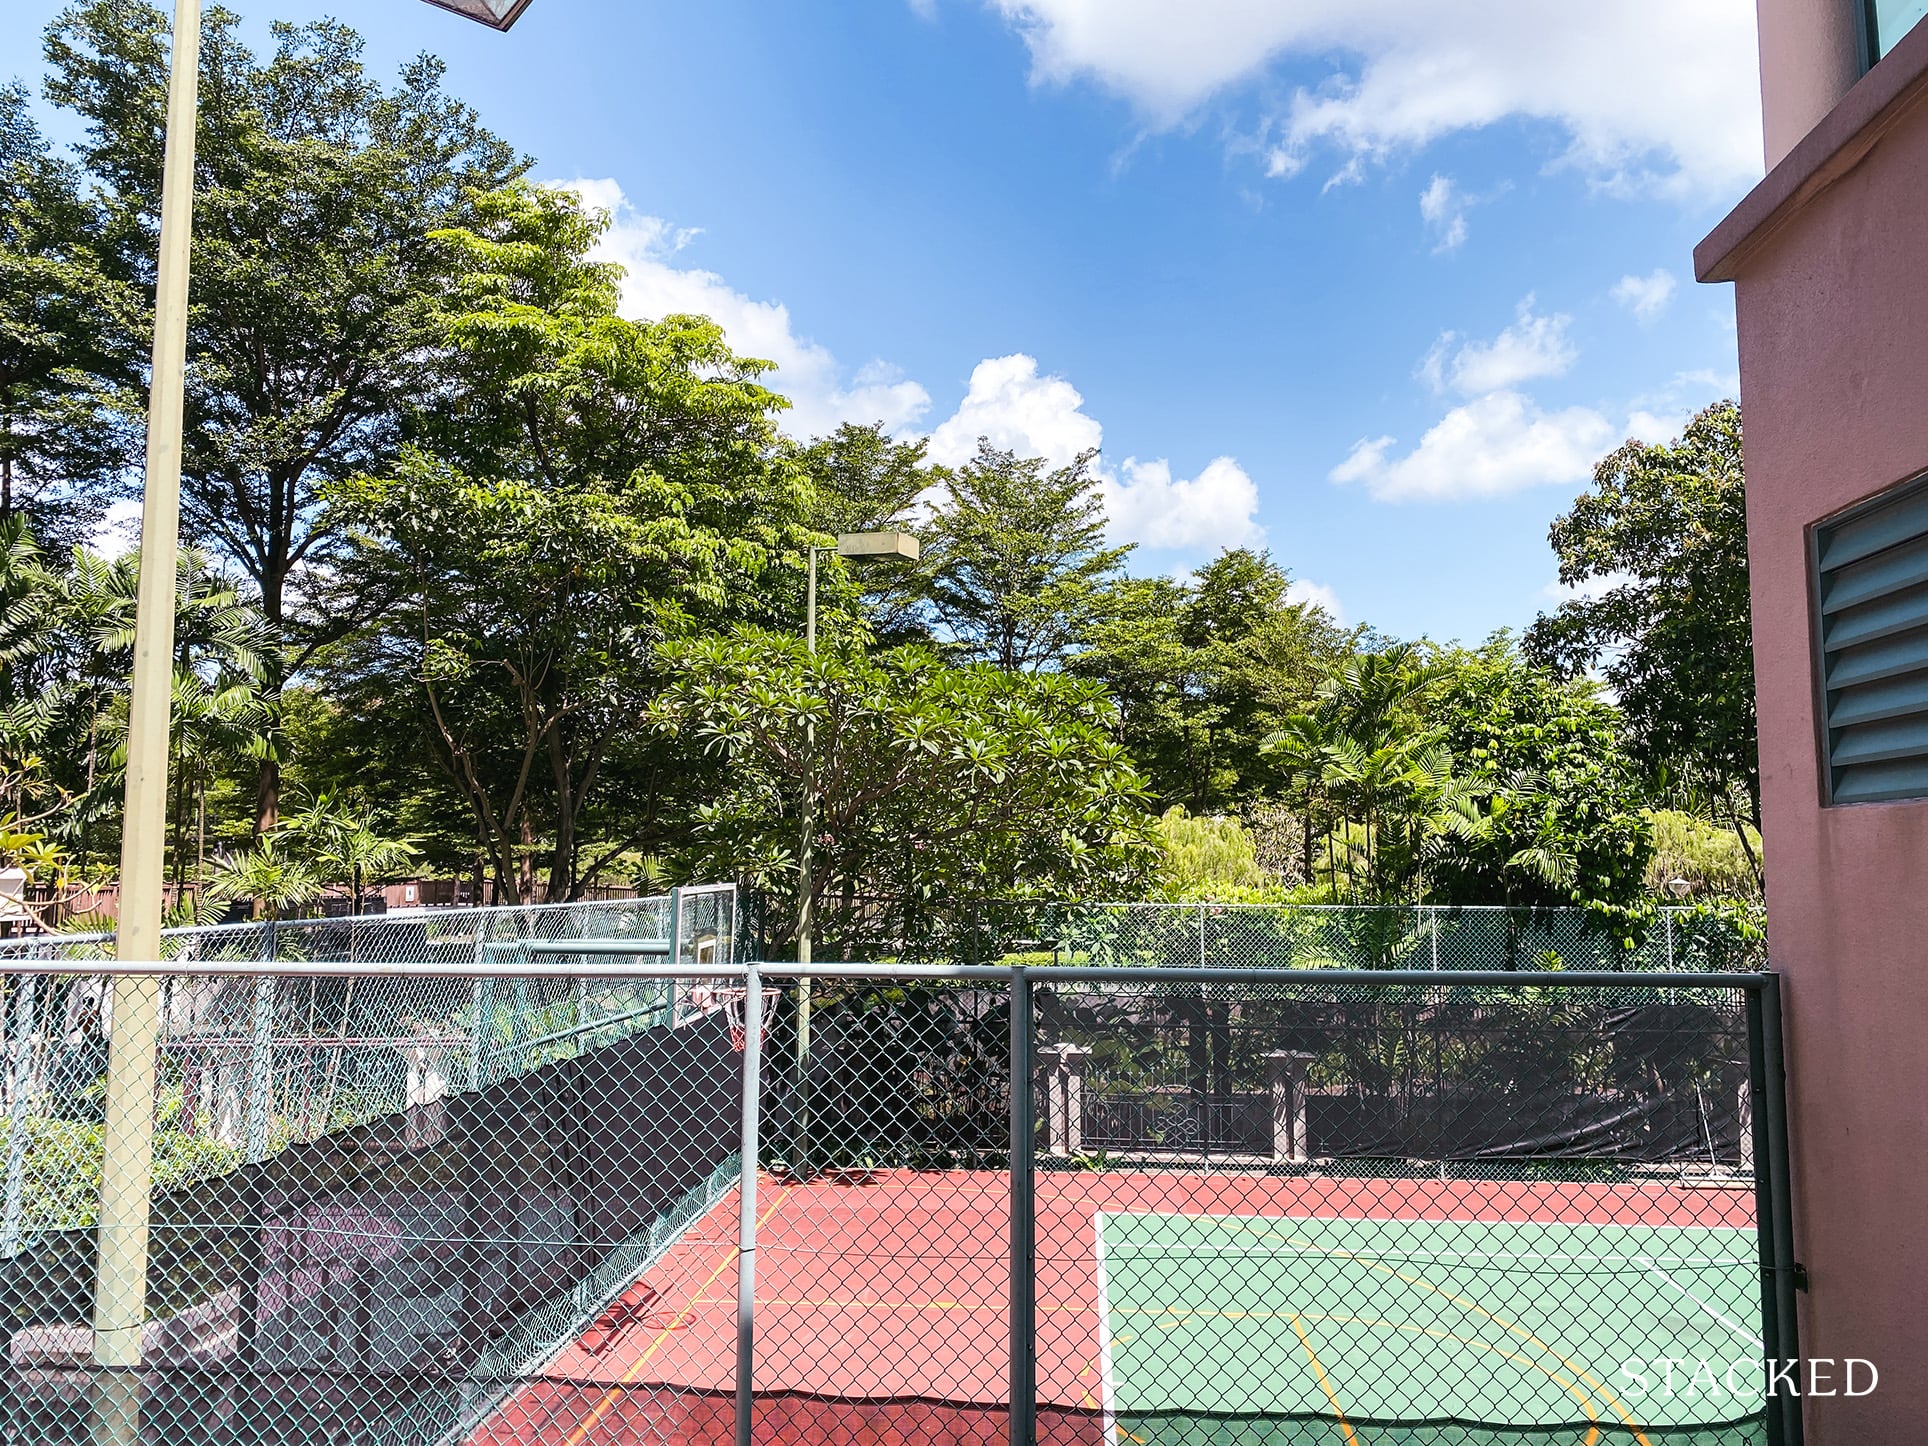 Tanglin regency tennis court